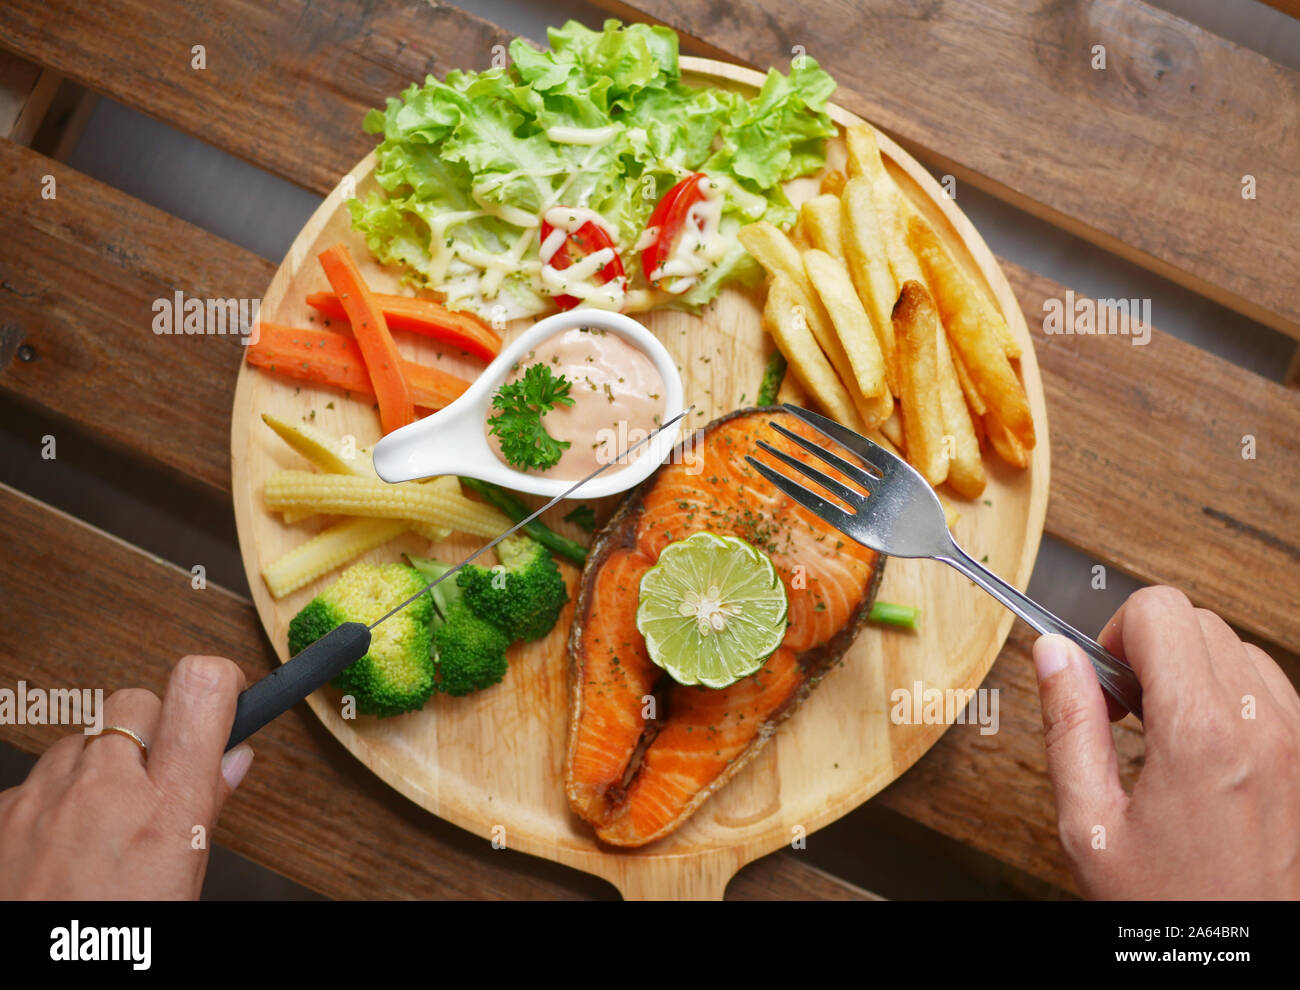 Bistecca di salmone servite sul piatto di legno ,piatti laterali sono verdure bollite , le patatine fritte , insalata fresca ,salsa alla panna e pezzo di limone sulla parte superiore Foto Stock